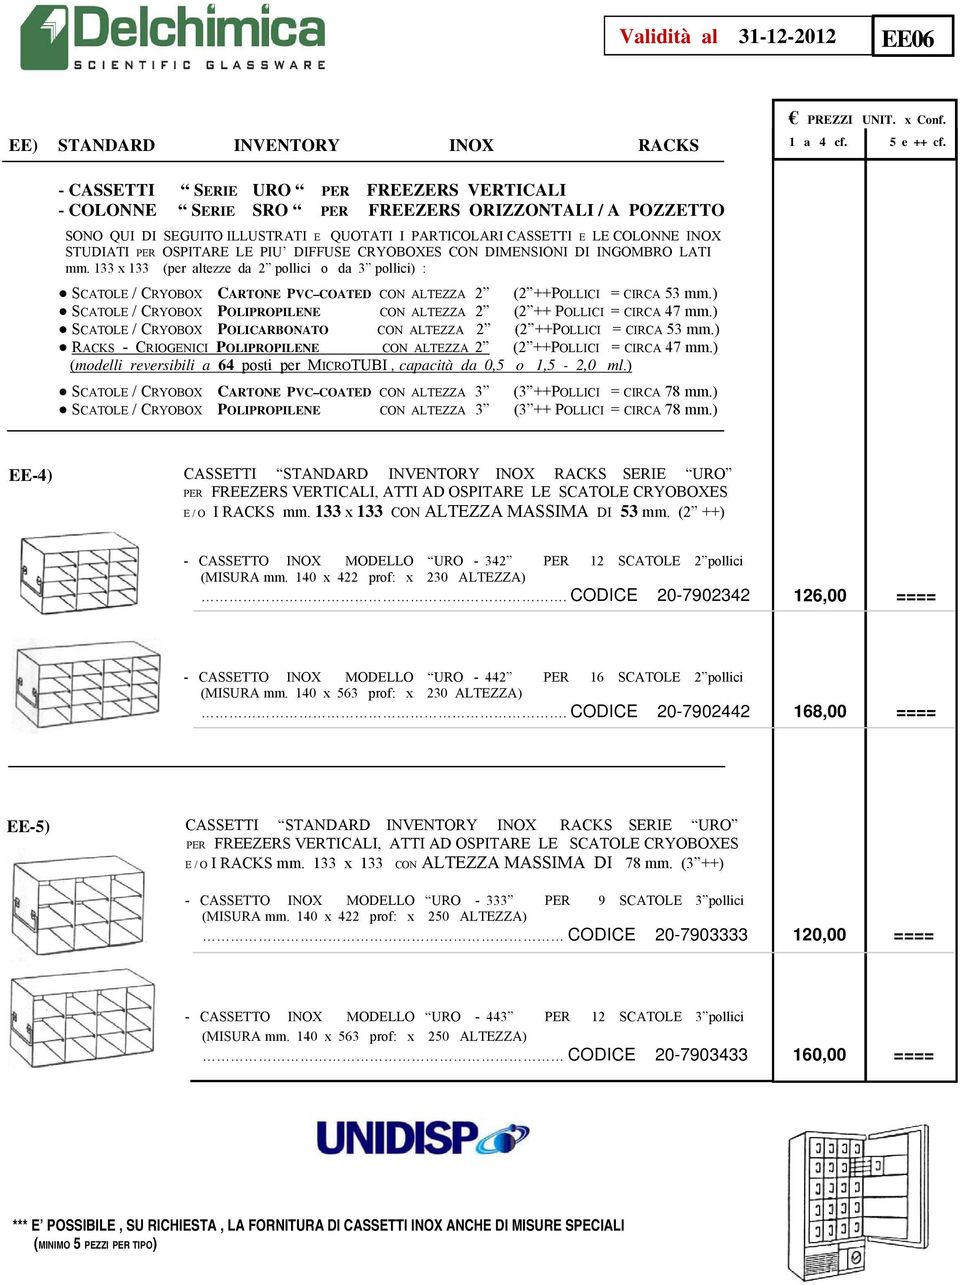 133 x 133 (per altezze da 2 pollici o da 3 pollici) : SCATOLE / CRYOBOX CARTONE PVC COATED CON ALTEZZA 2 (2 ++POLLICI = CIRCA 53 mm.